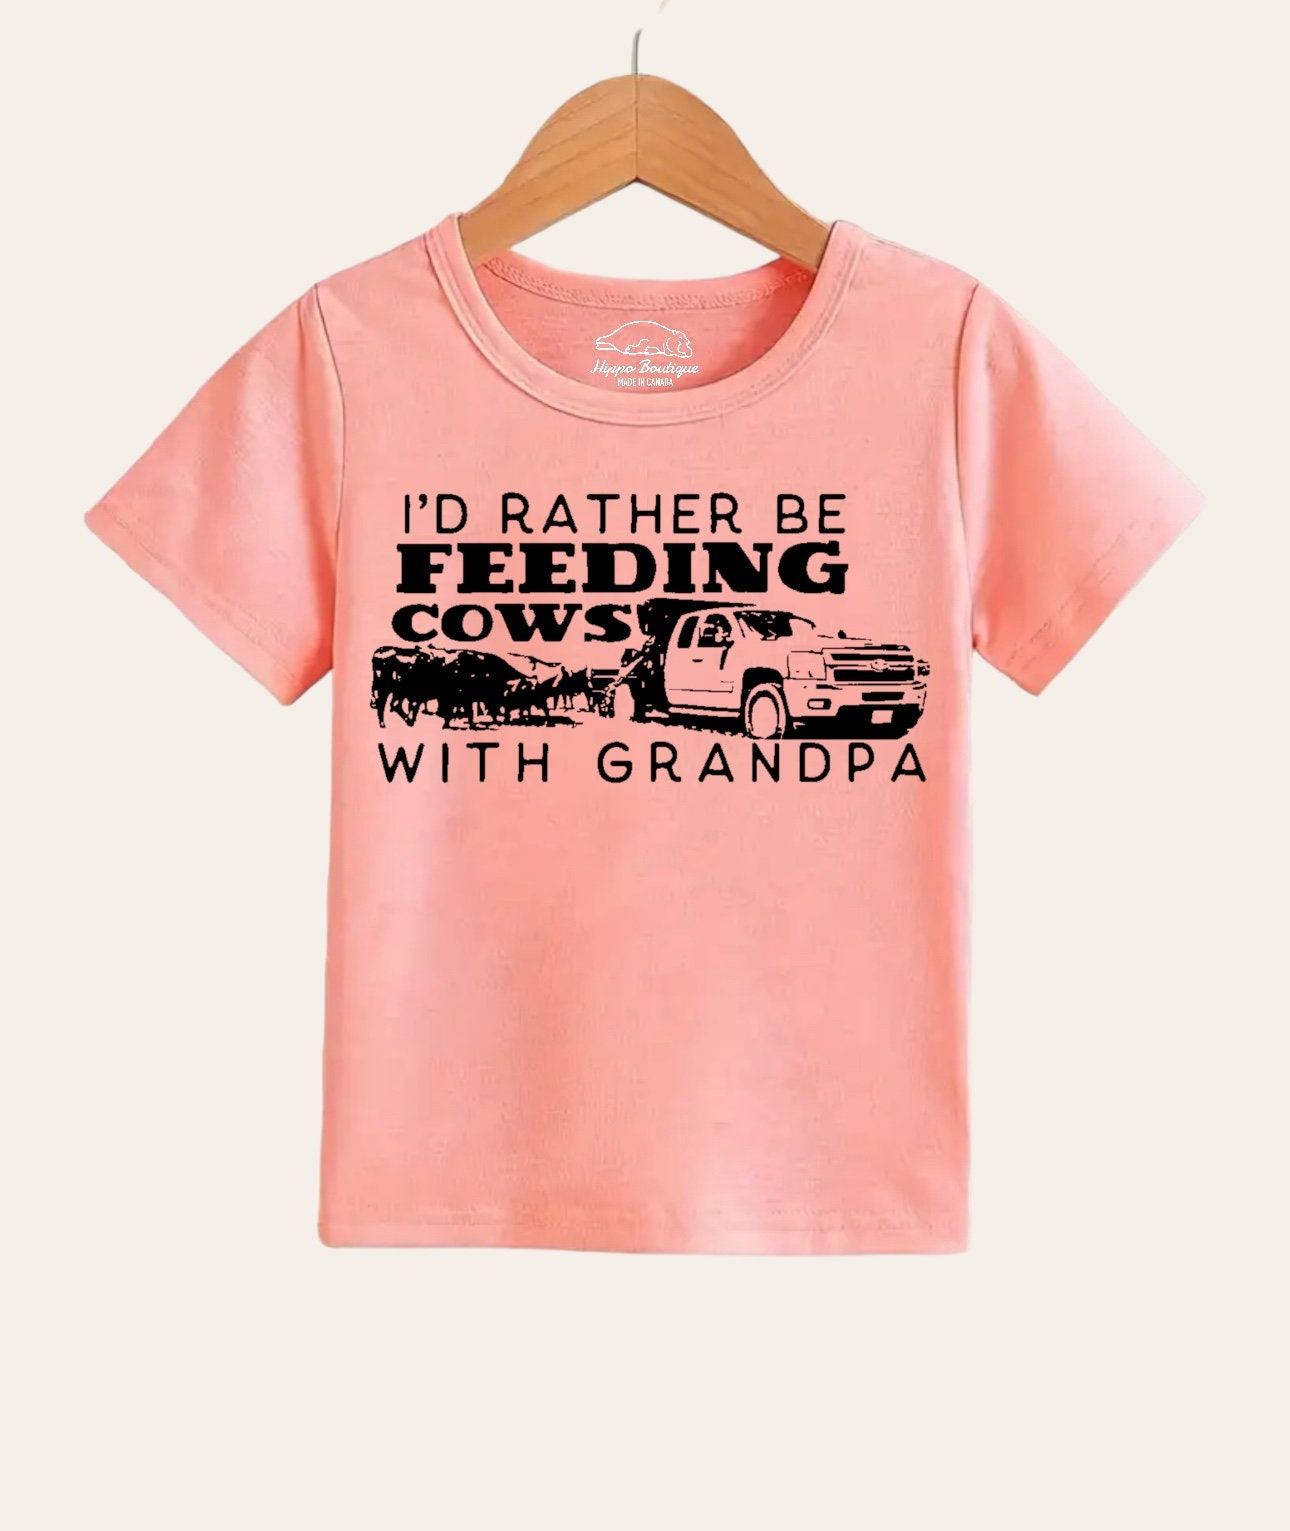 Just A Girl Who Loves Okapis Shirt, Okapi Lover Gift, Animal Lover Adult  Toddler Infant Kids Gift T-shirt -  Canada